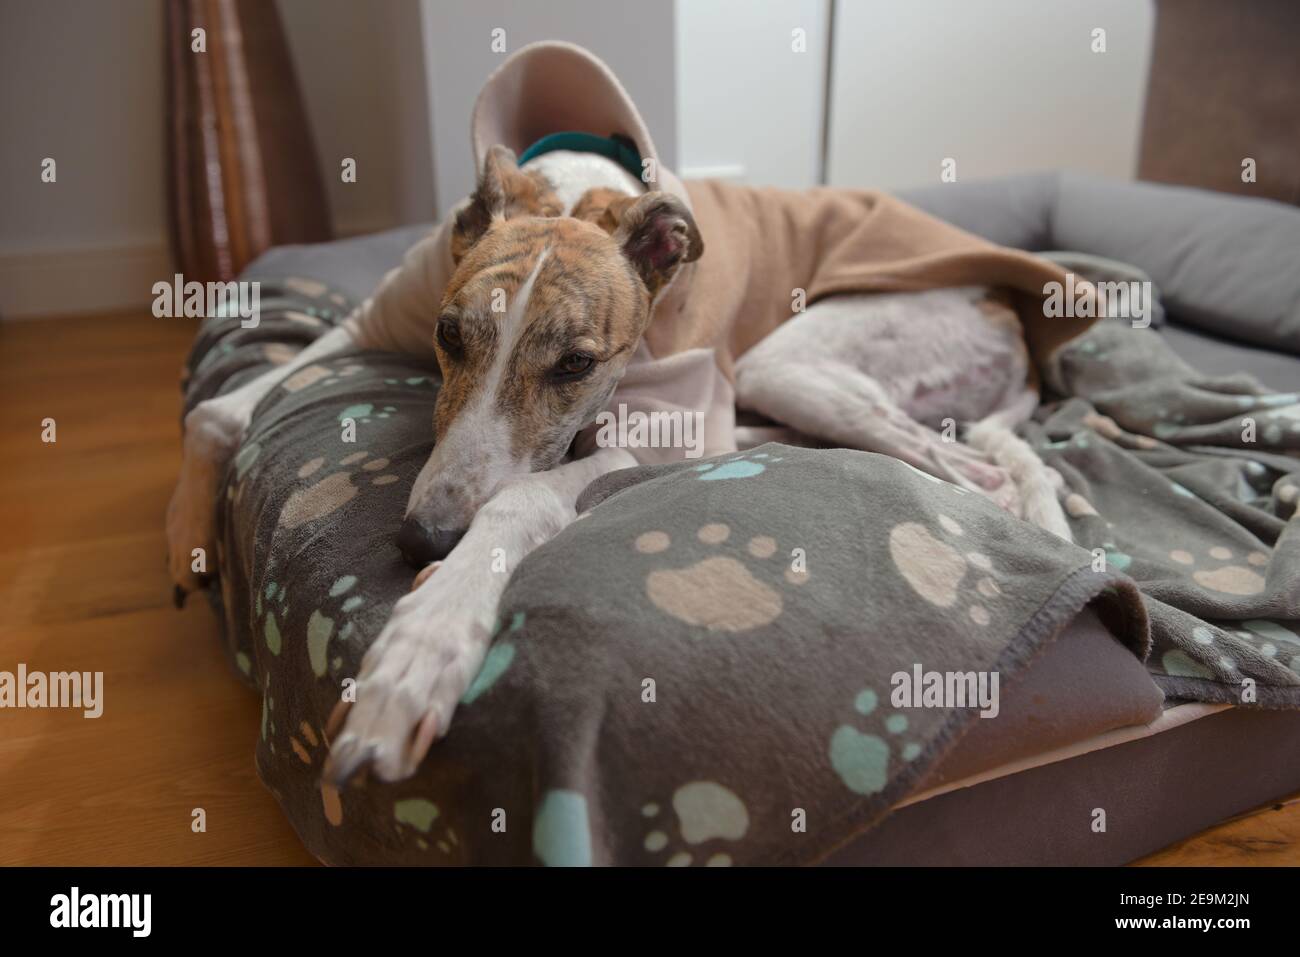 Image grand angle d'un grand chien greyhound portant un pyjama. La fourrure blanche et brinise s'accorde bien avec le jeu de couleurs bleu sarcelle et orange. Banque D'Images